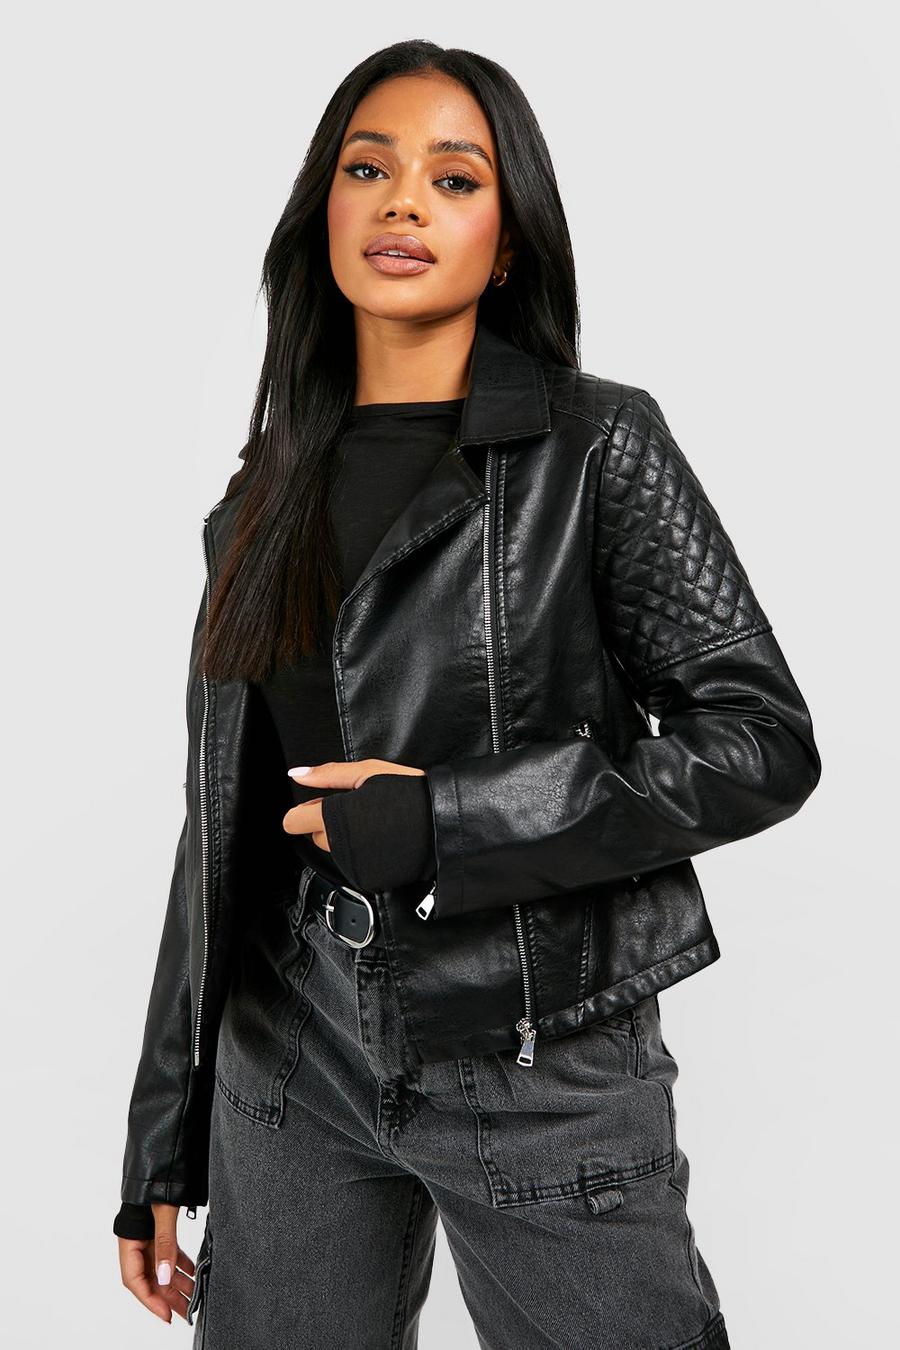 Women Coat Women Faux Leather Jackets Womens Fur Leather Jackets 